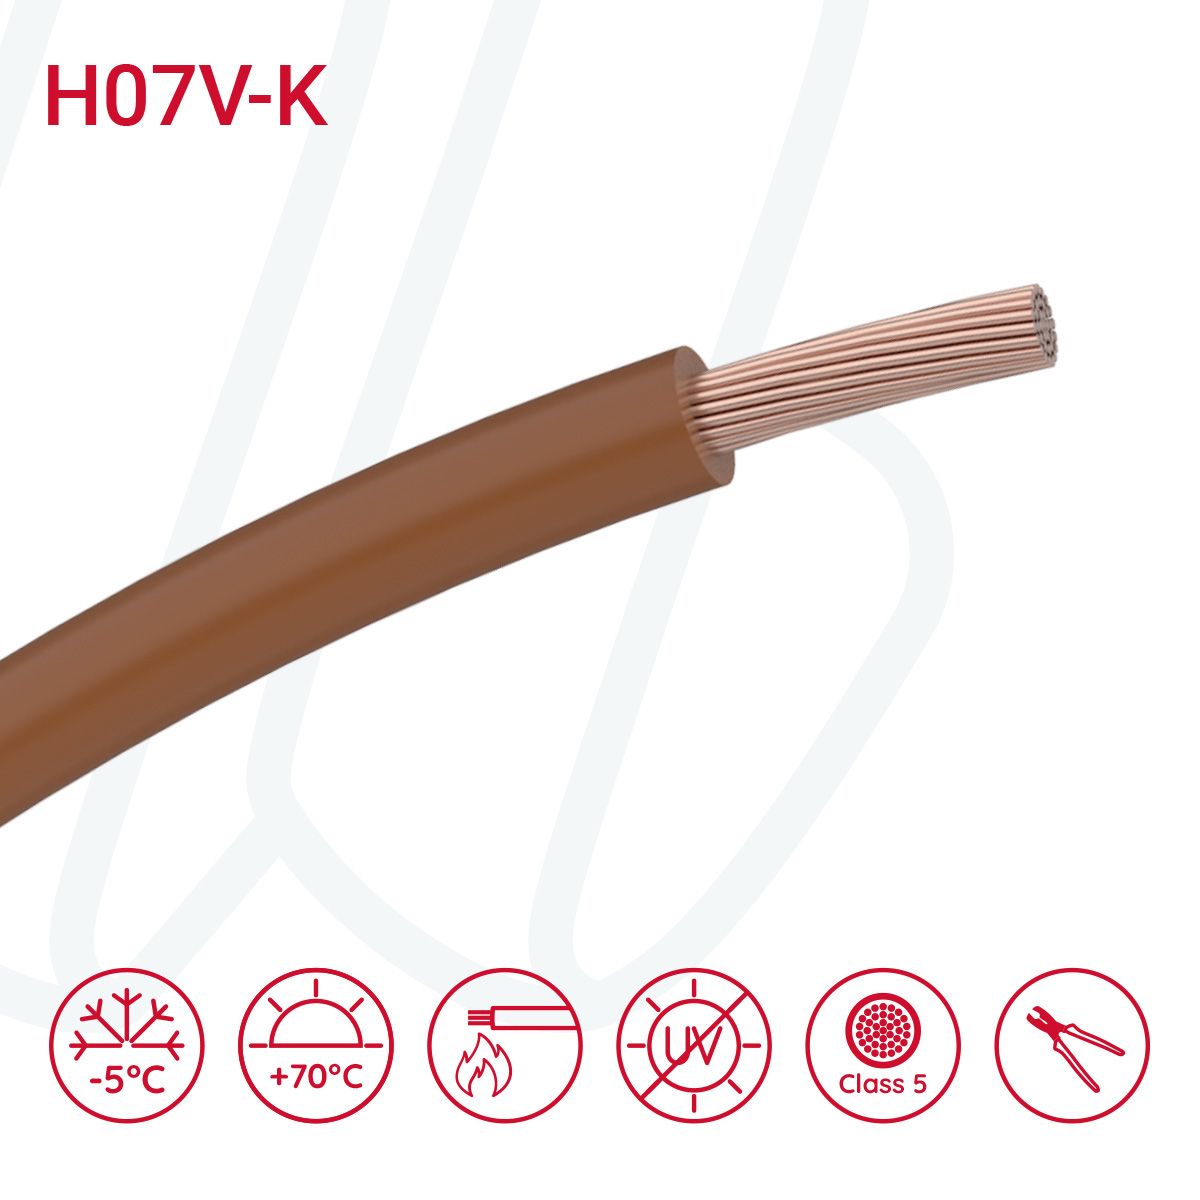 Провід монтажний гнучкий H07V-K 35 мм² коричневий, 01, 35